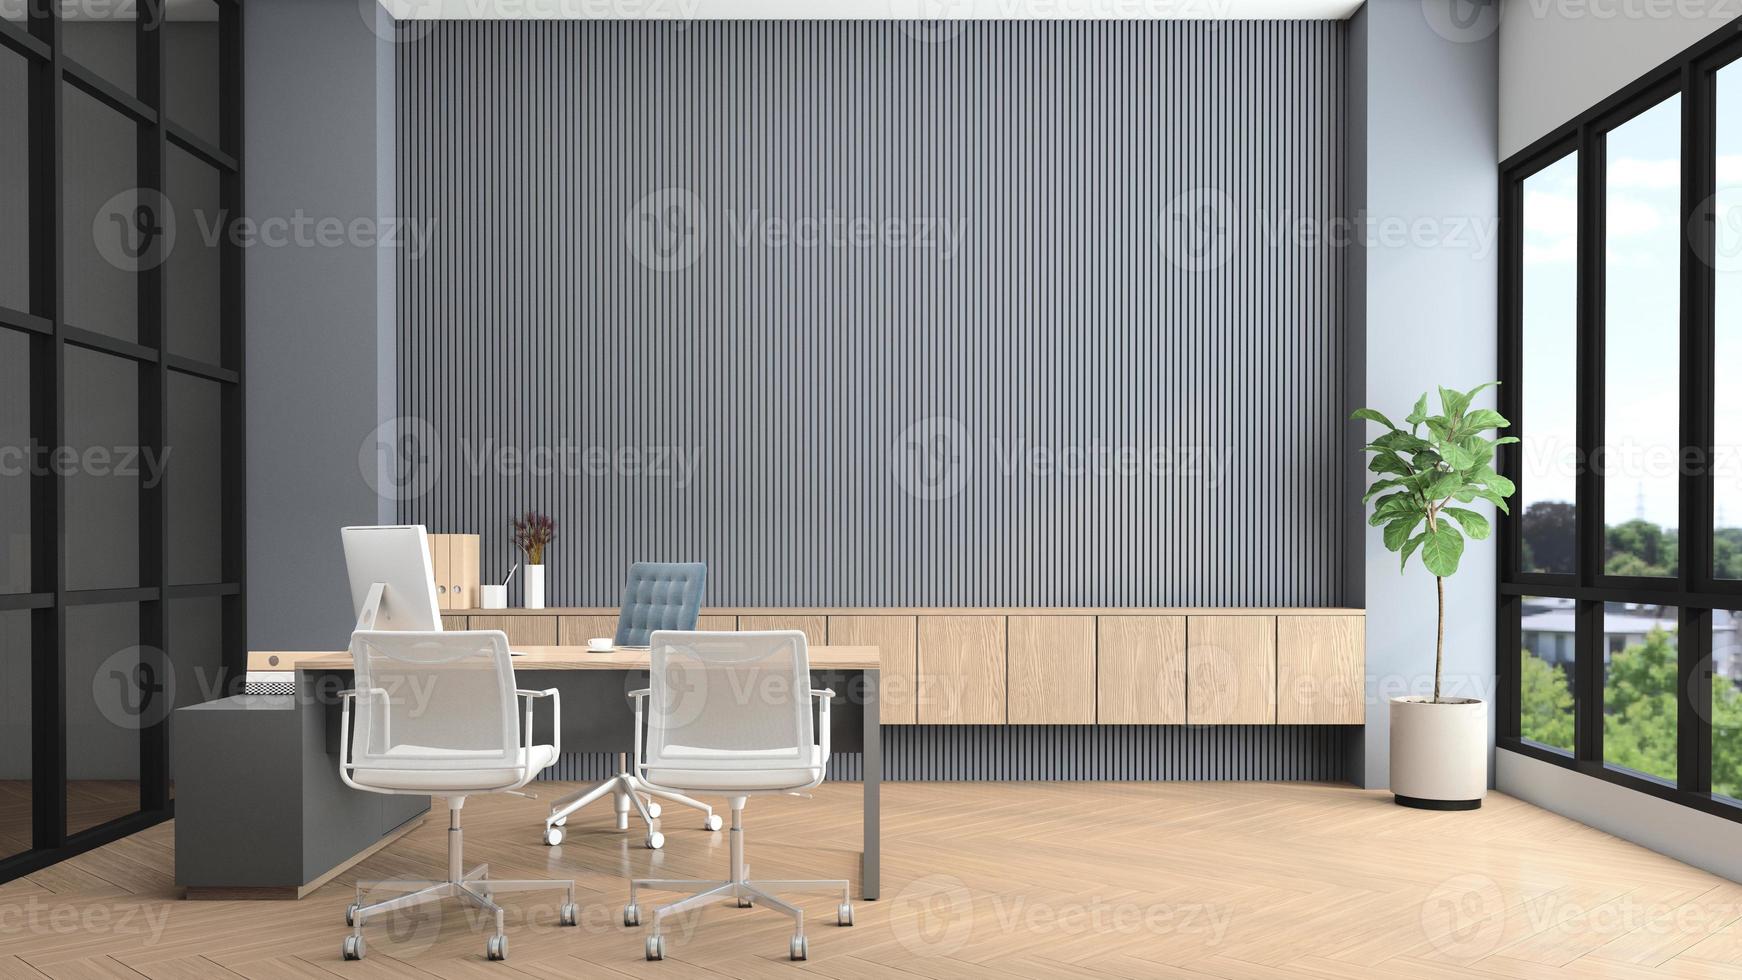 salle de direction moderne avec bureau et ordinateur, mur de lattes grises et armoire en bois intégrée. rendu 3d photo